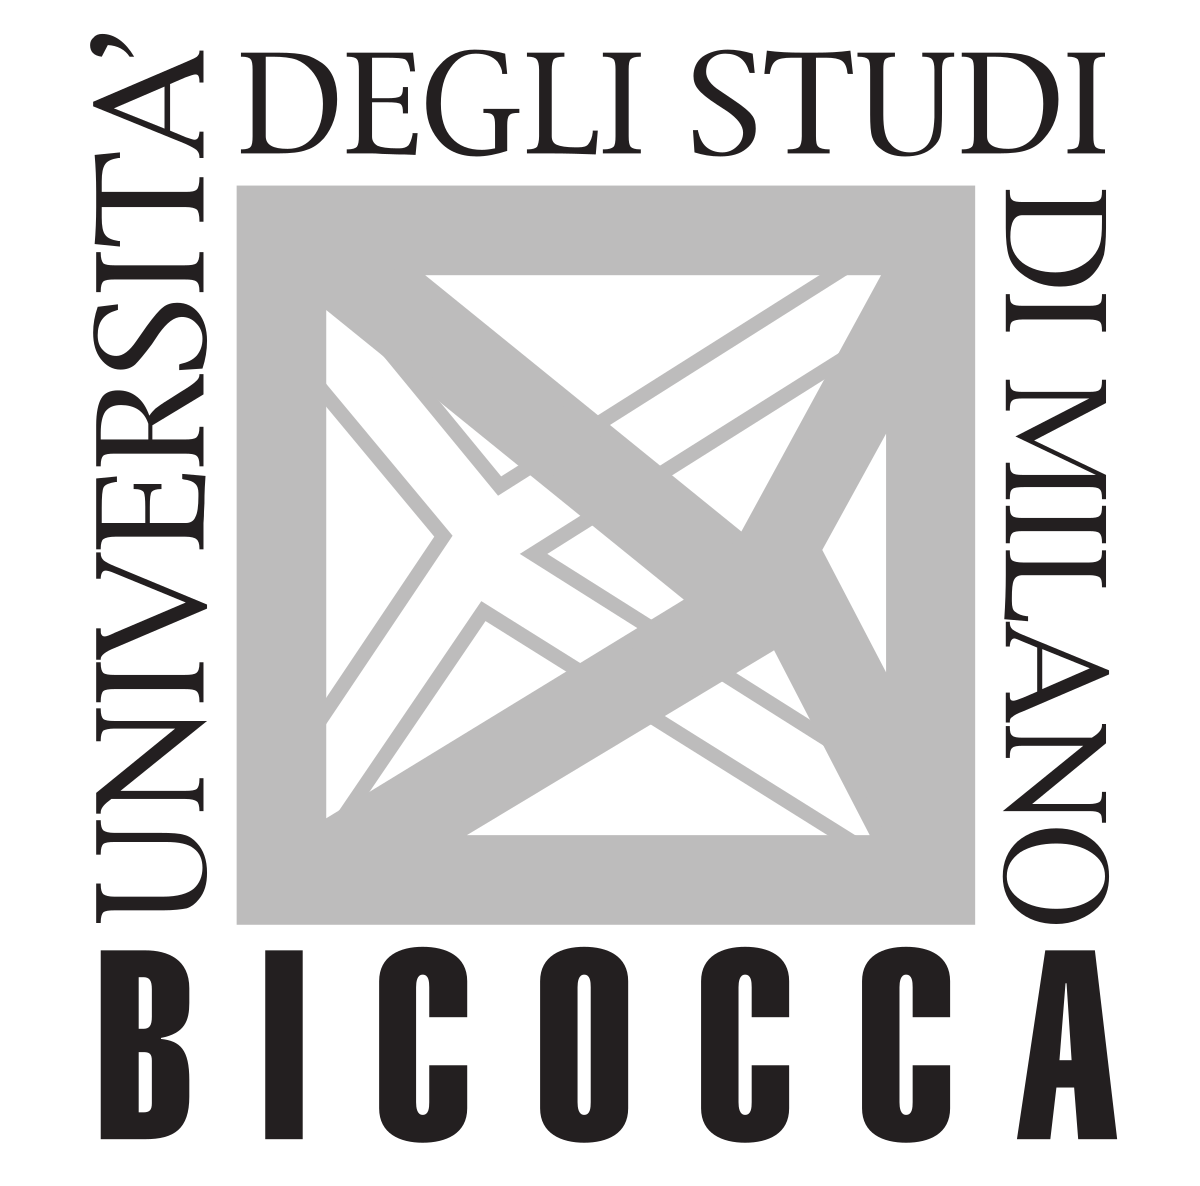 Logo Università Bicocca